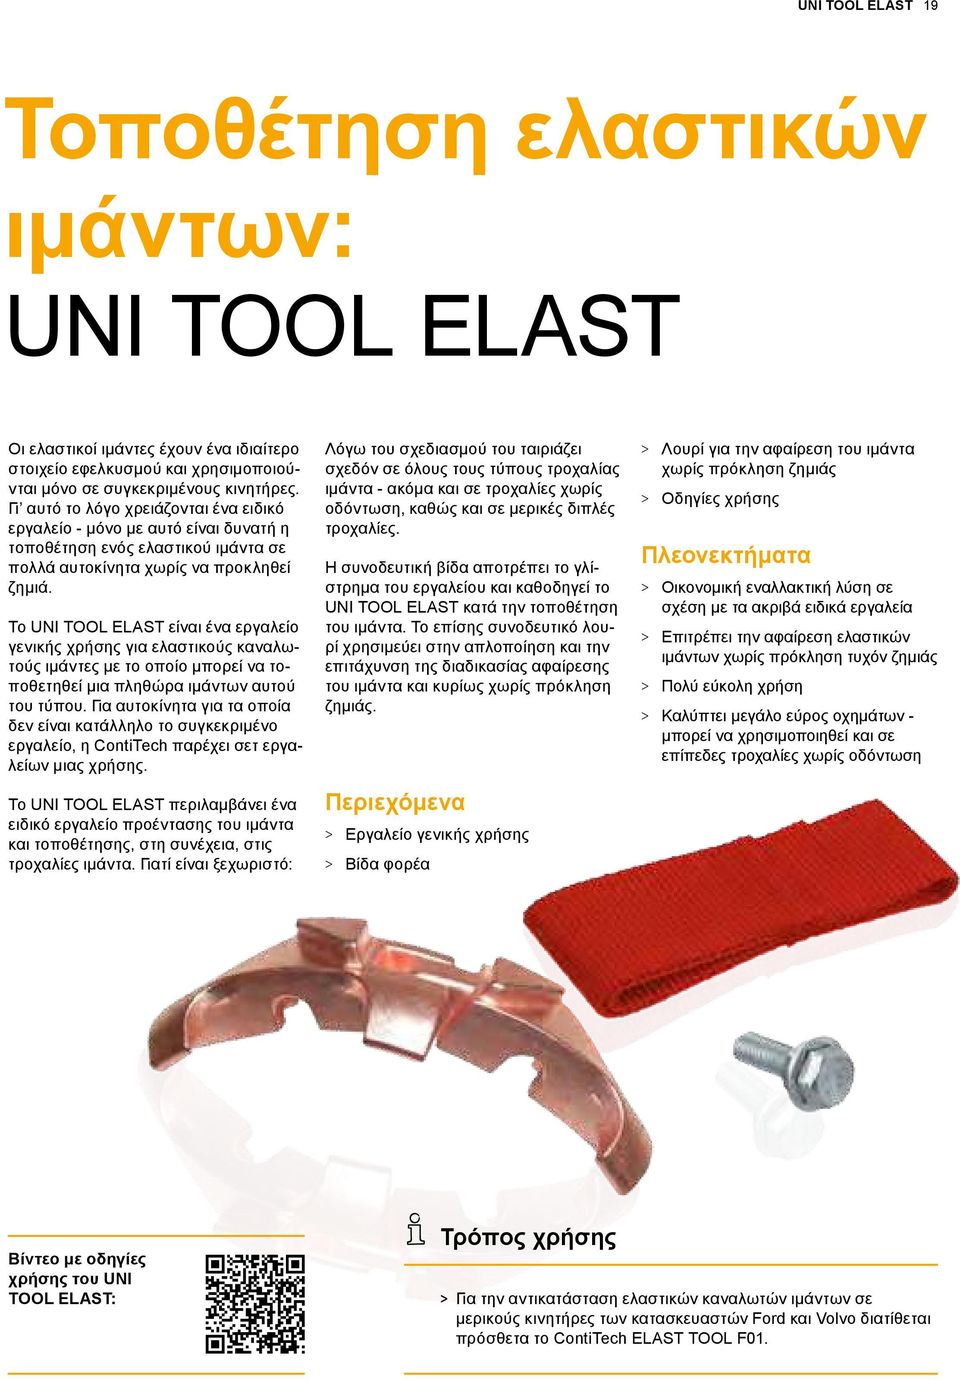 Το UNI TOOL ELAST είναι ένα εργαλείο γενικής χρήσης για ελαστικούς καναλωτούς ιμάντες με το οποίο μπορεί να τοποθετηθεί μια πληθώρα ιμάντων αυτού του τύπου.